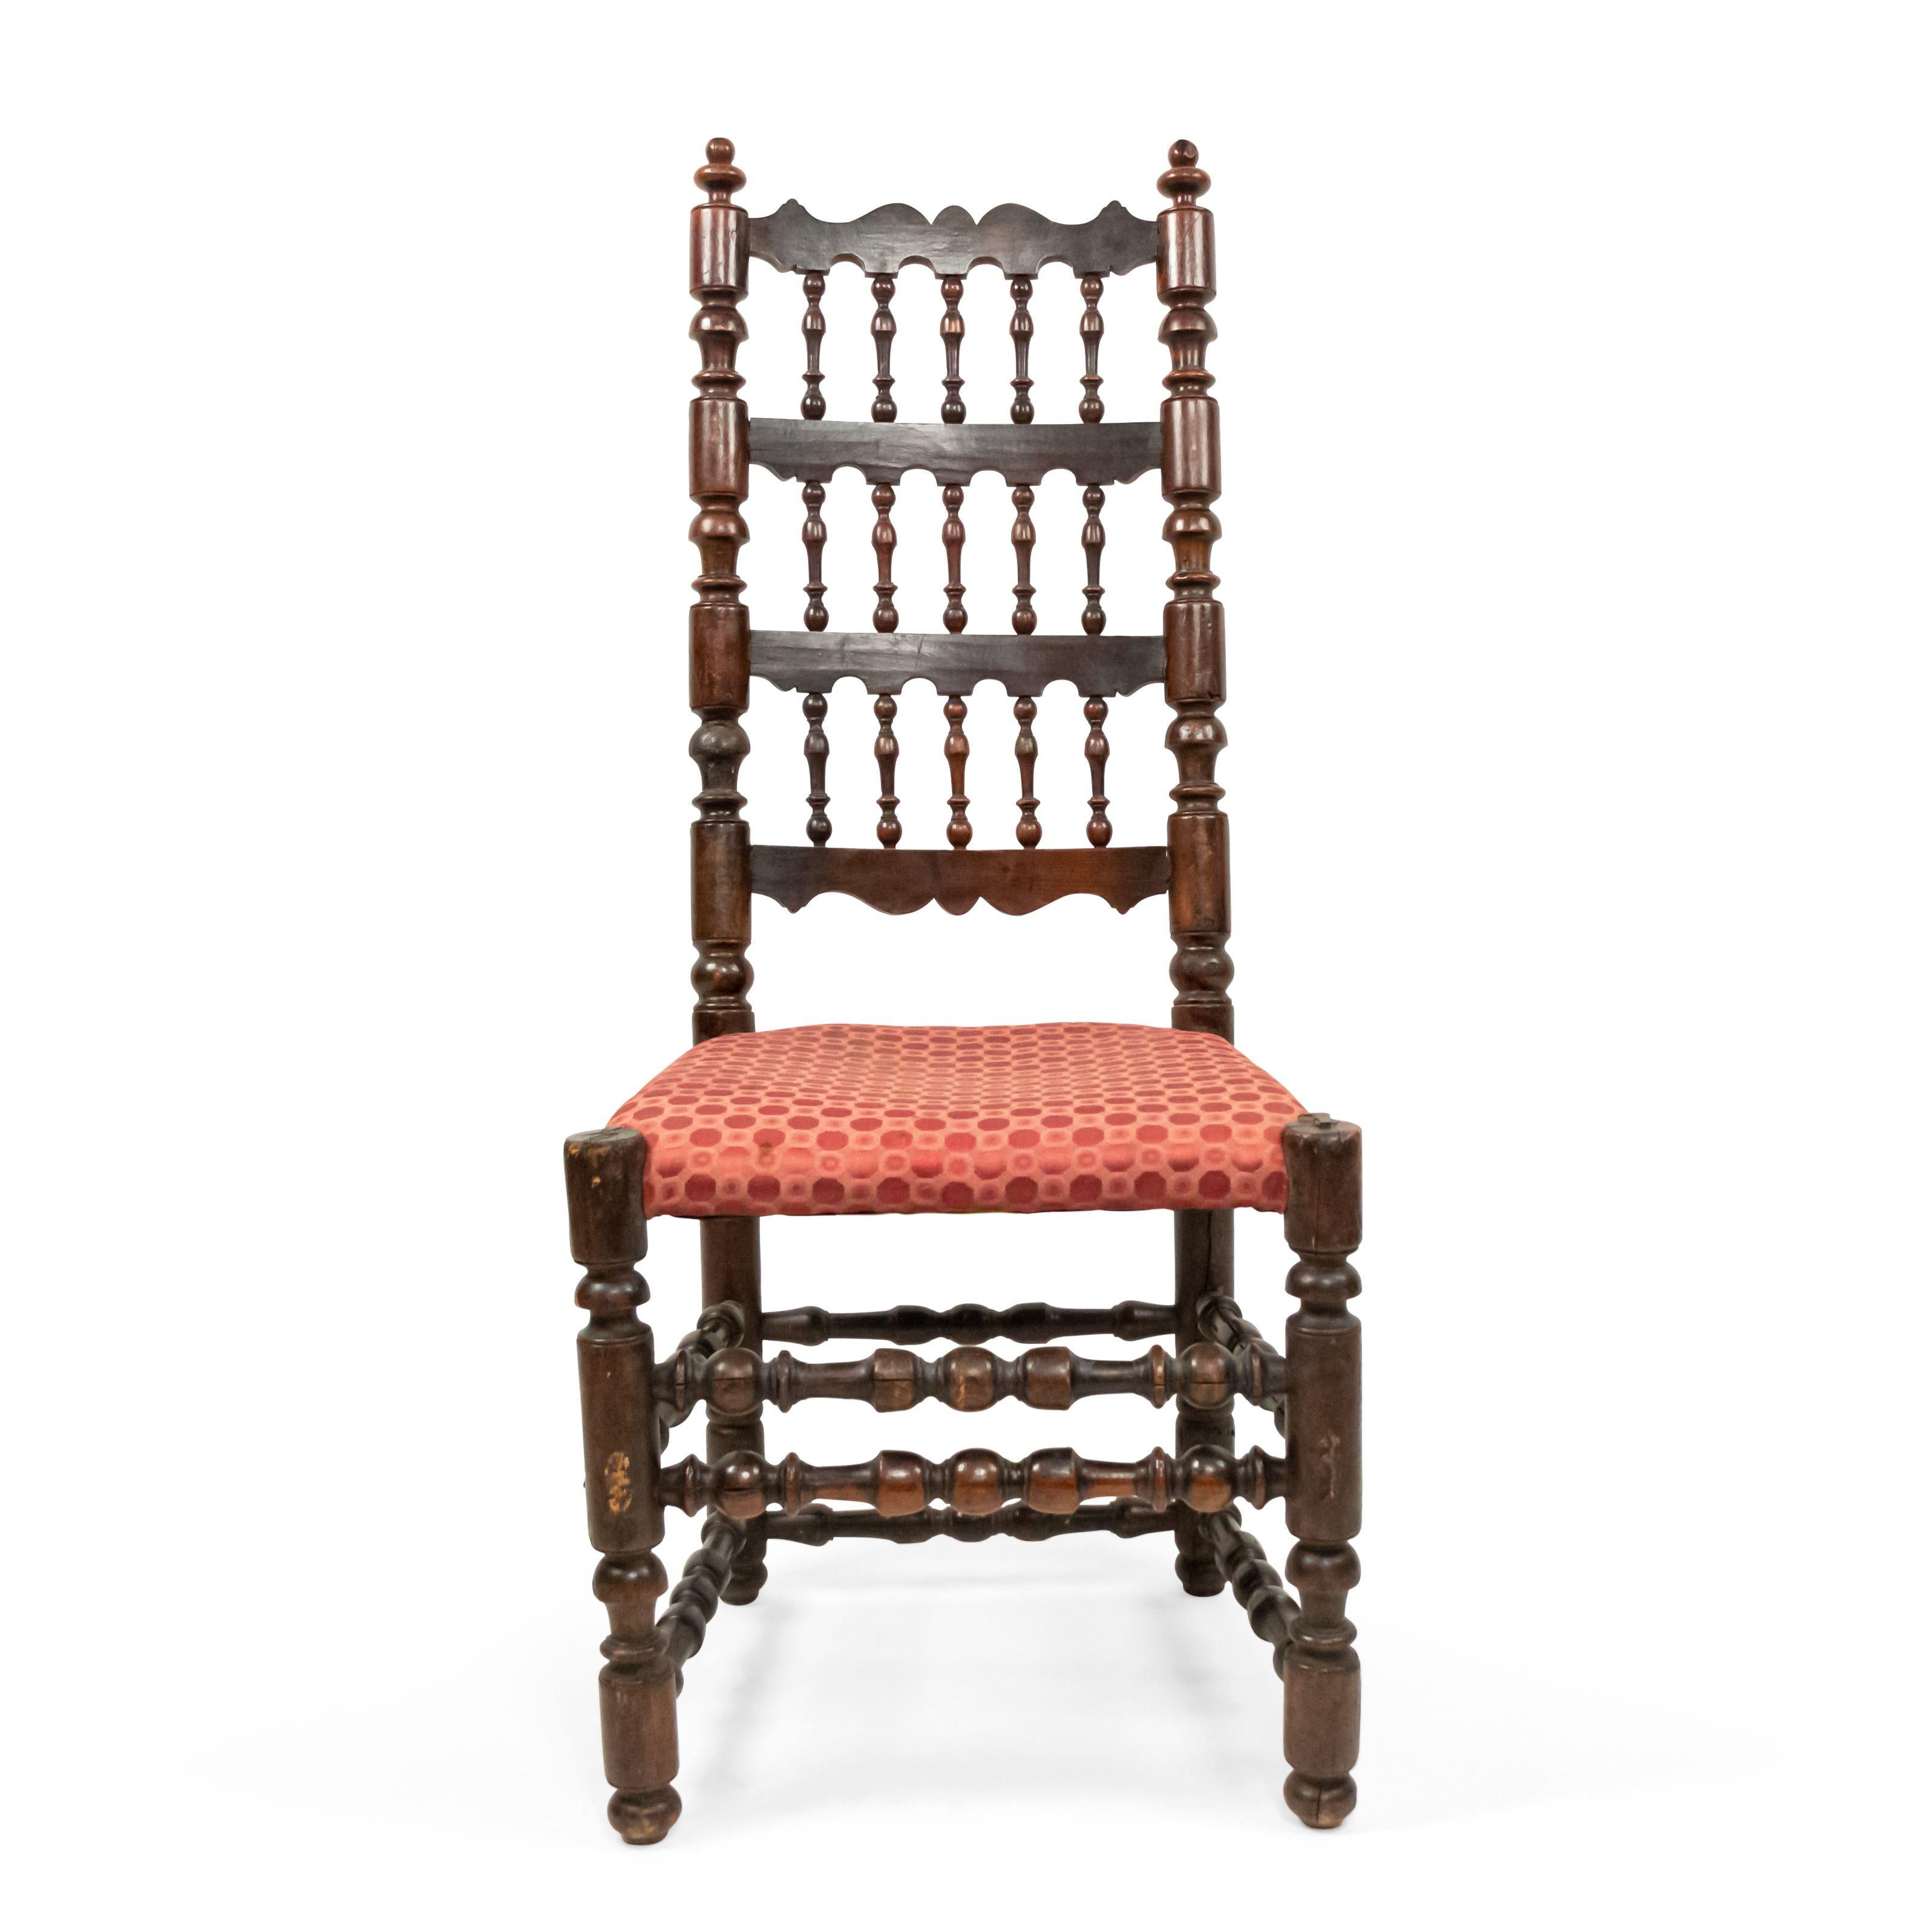 3 englische Renaissance-Stil (17. Jh.) Nussbaum 3-stufige Spindel zurück Seite Stühle mit gepolstertem Sitz. (Preis pro Stück).
  